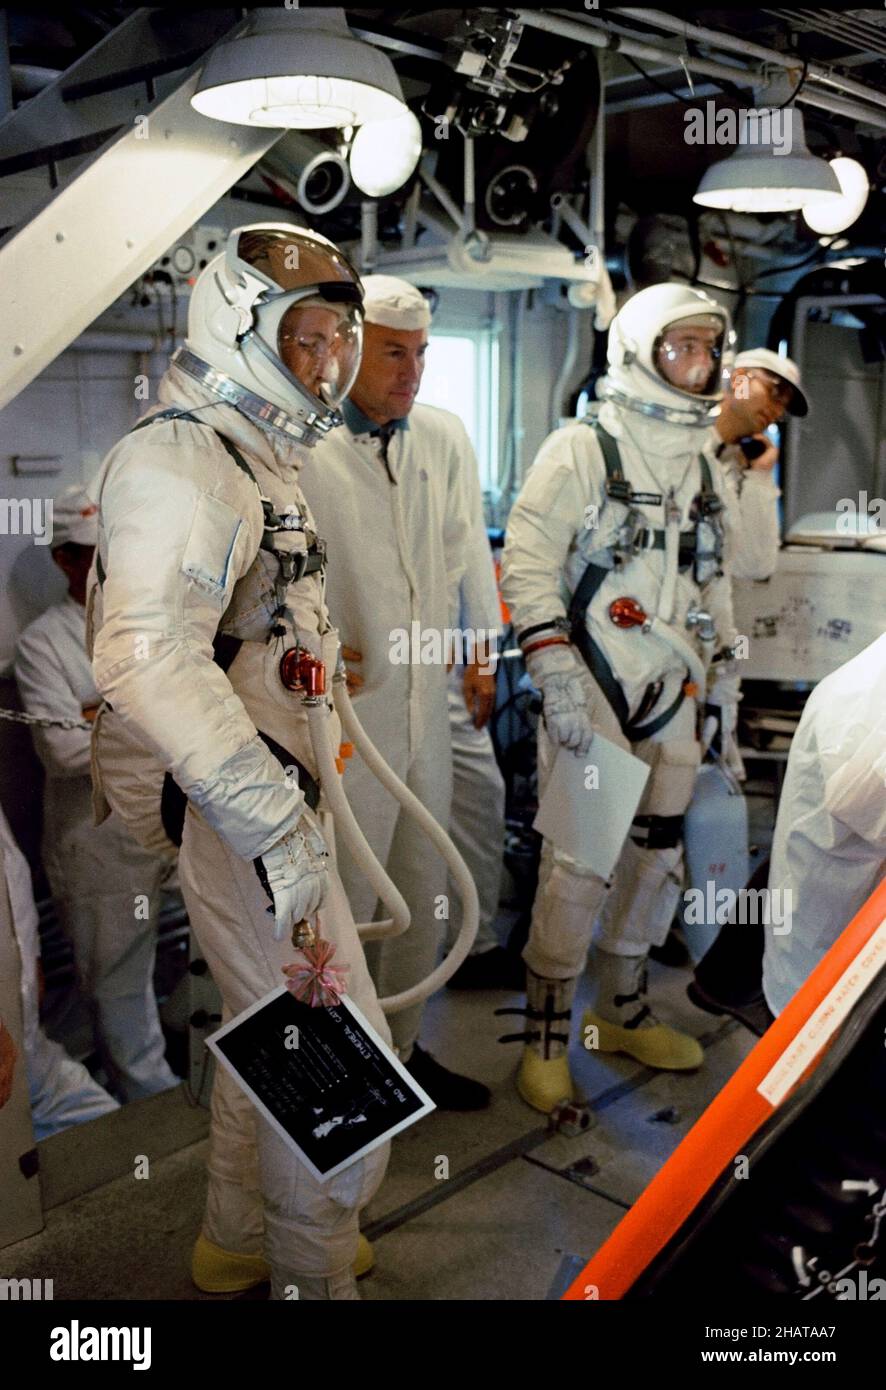 (3 giugno 1965) --- gli astronauti Edward H. White II e James A. McDivitt sono mostrati nella stanza bianca mentre si preparano ad entrare nella navicella spaziale Gemini-4 in cima al veicolo di lancio del Titan a Cape Kennedy, Florida. Foto Stock